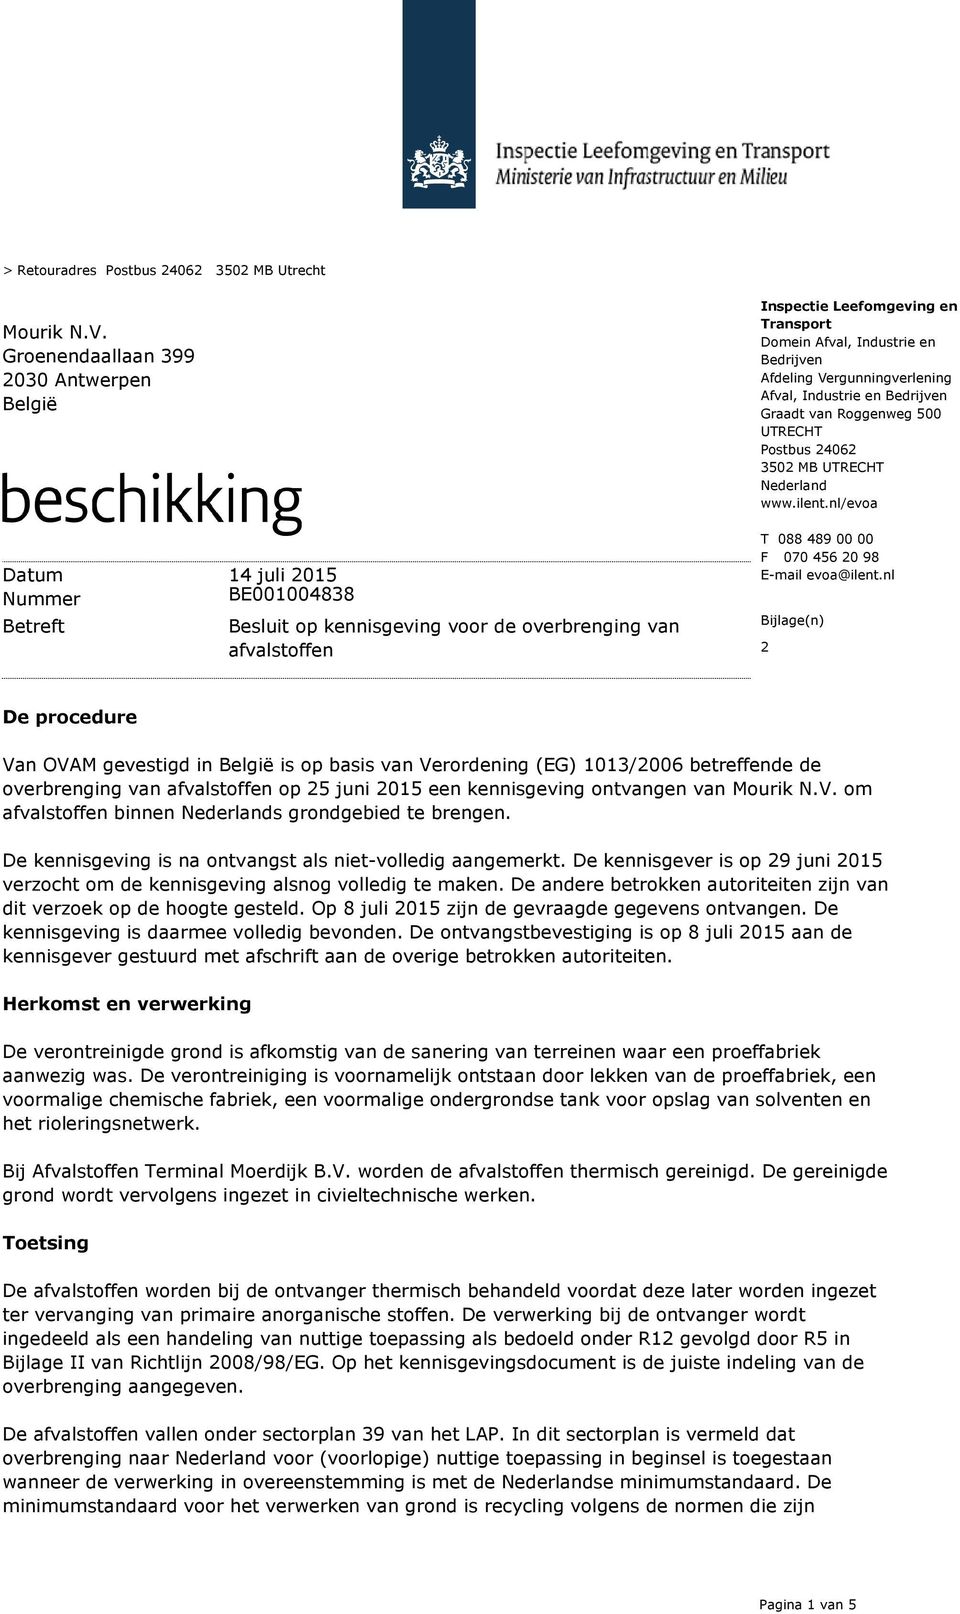 Bedrijven Afdeling Vergunningverlening Afval, Industrie en Bedrijven Graadt van Roggenweg 500 UTRECHT Postbus 24062 3502 MB UTRECHT Nederland www.ilent.